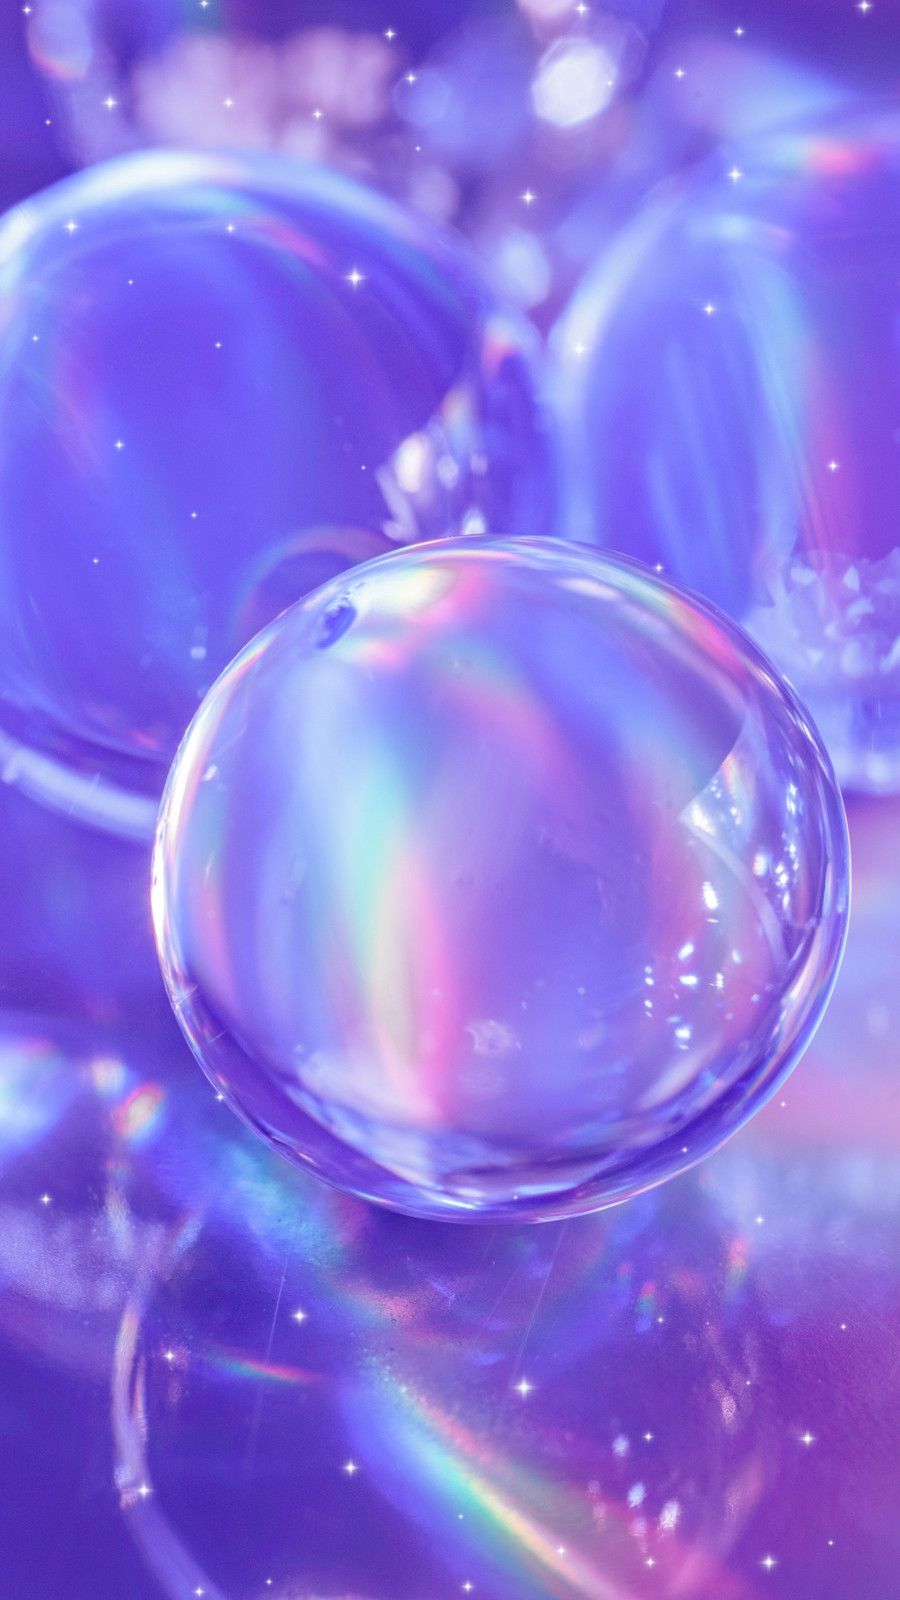 Purple Bubbles Wallpapers - Top Free Purple Bubbles Backgrounds ...